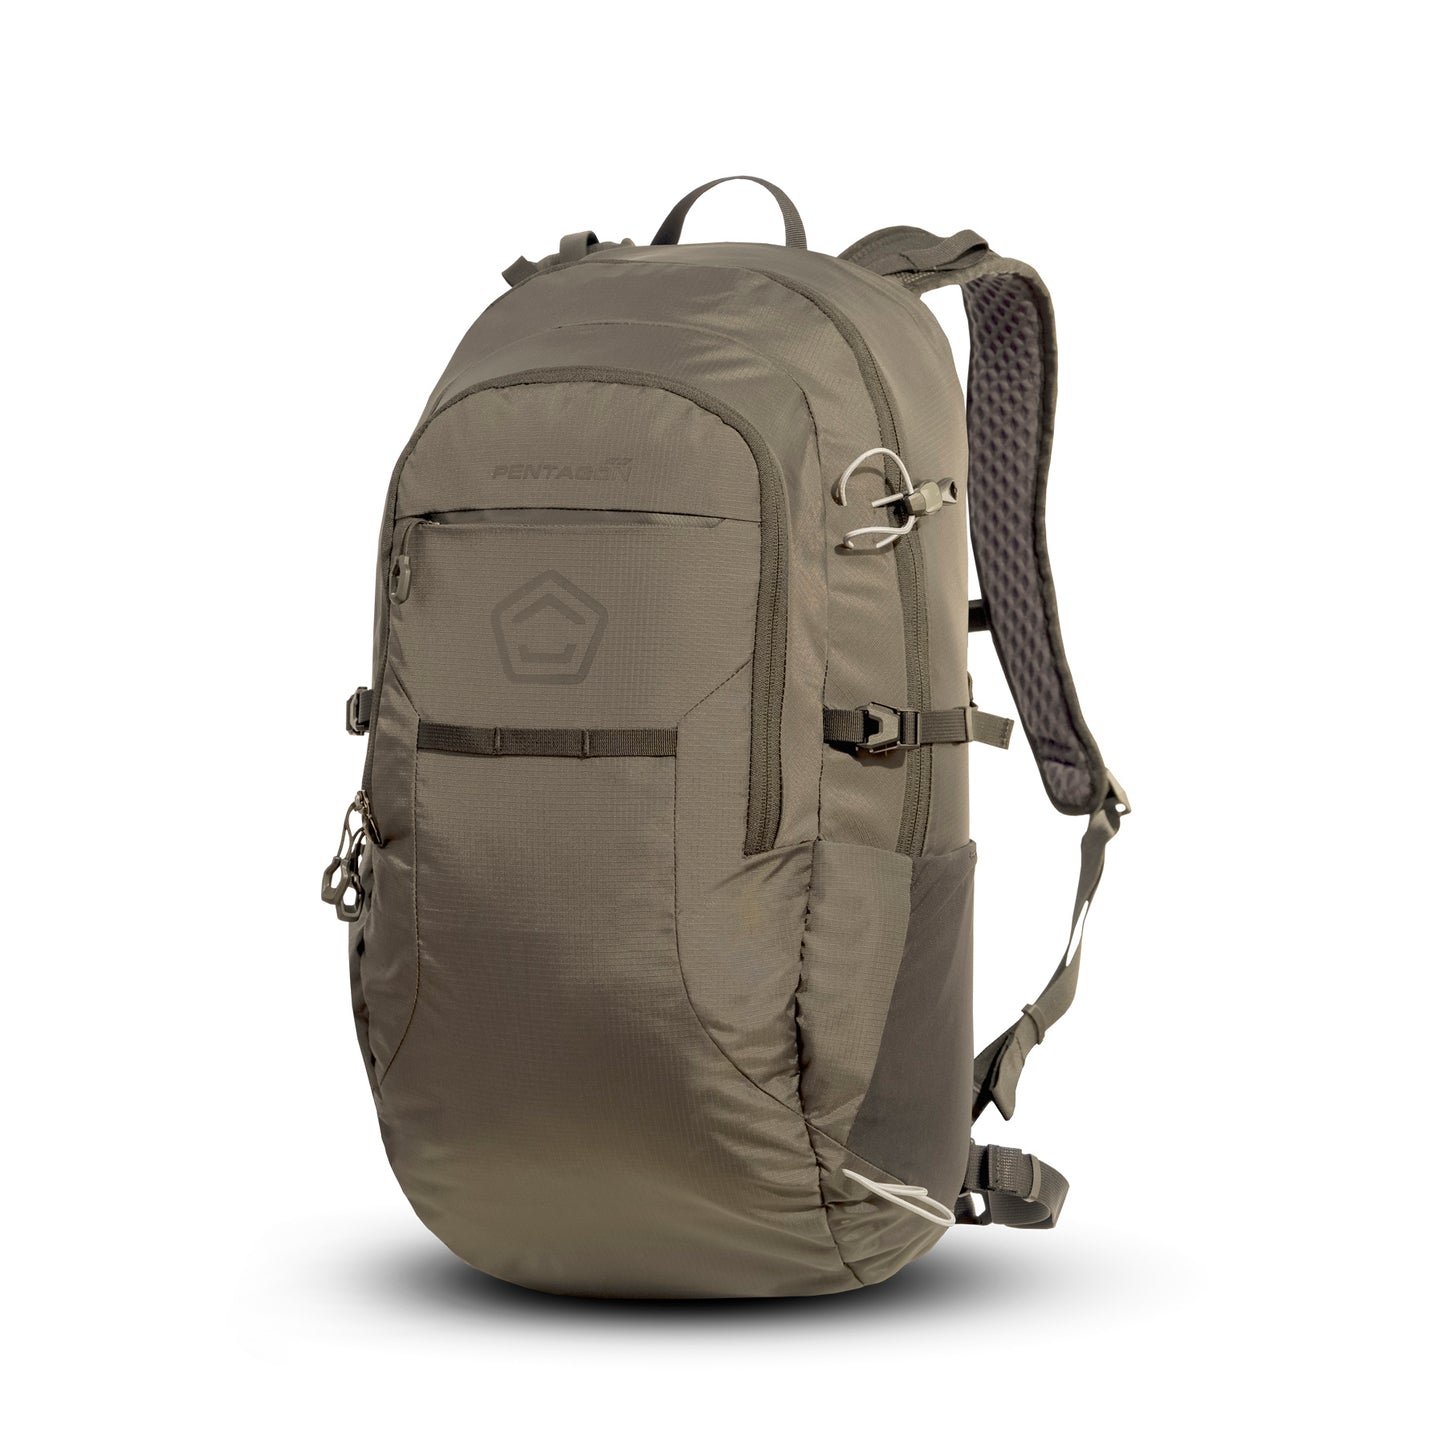 Pentagon Minor Backpack - 20 liter